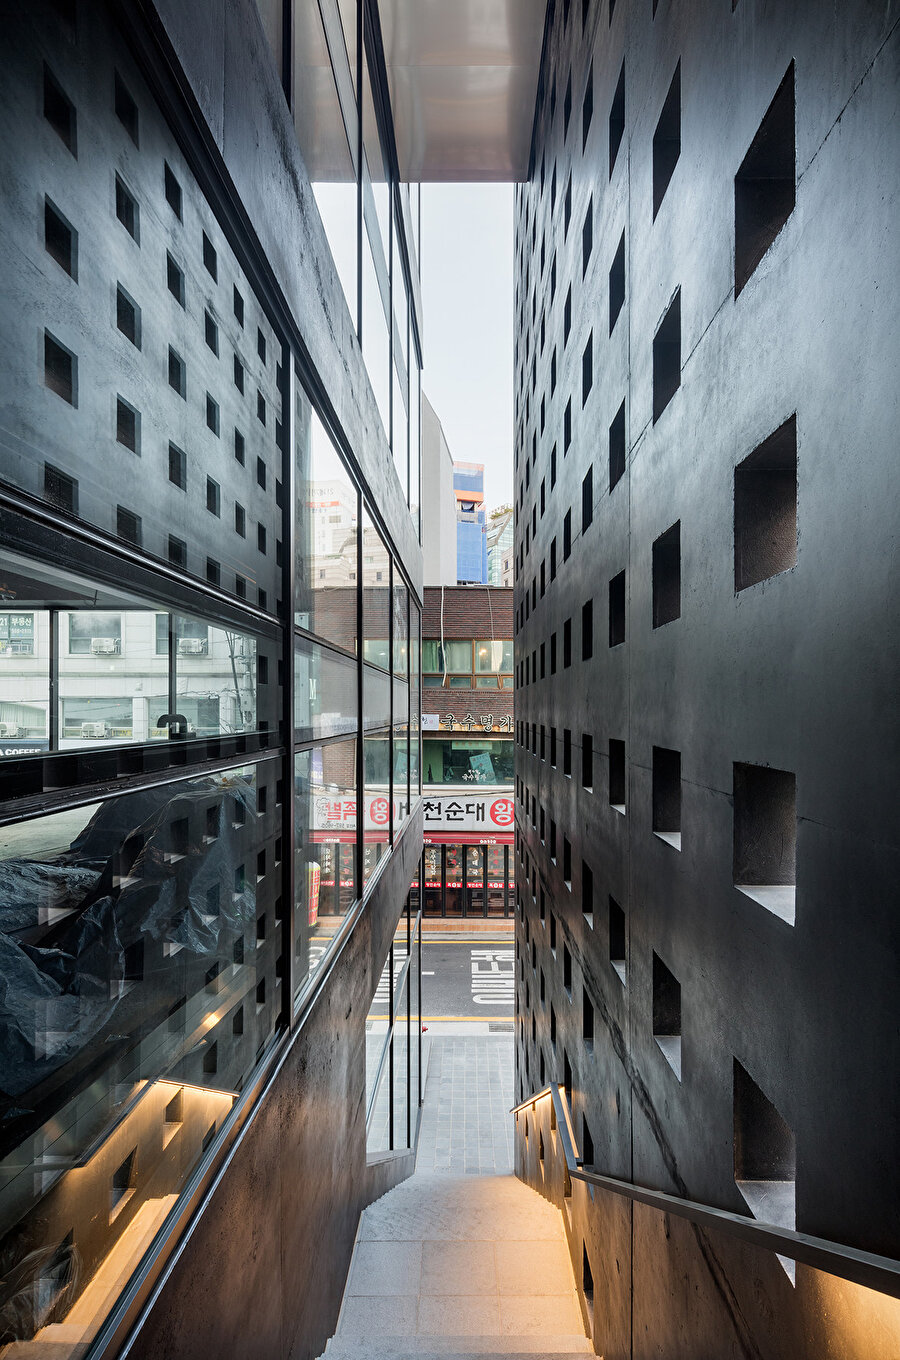 OBBA, ofis yapılarındaki klasikleşen mimari dili kırmak ve yapının yeni çalışma modellerindeki esnekliklere açık olduğunu vurgulamak üzere malzemenin gücünü ortaya koyuyor.